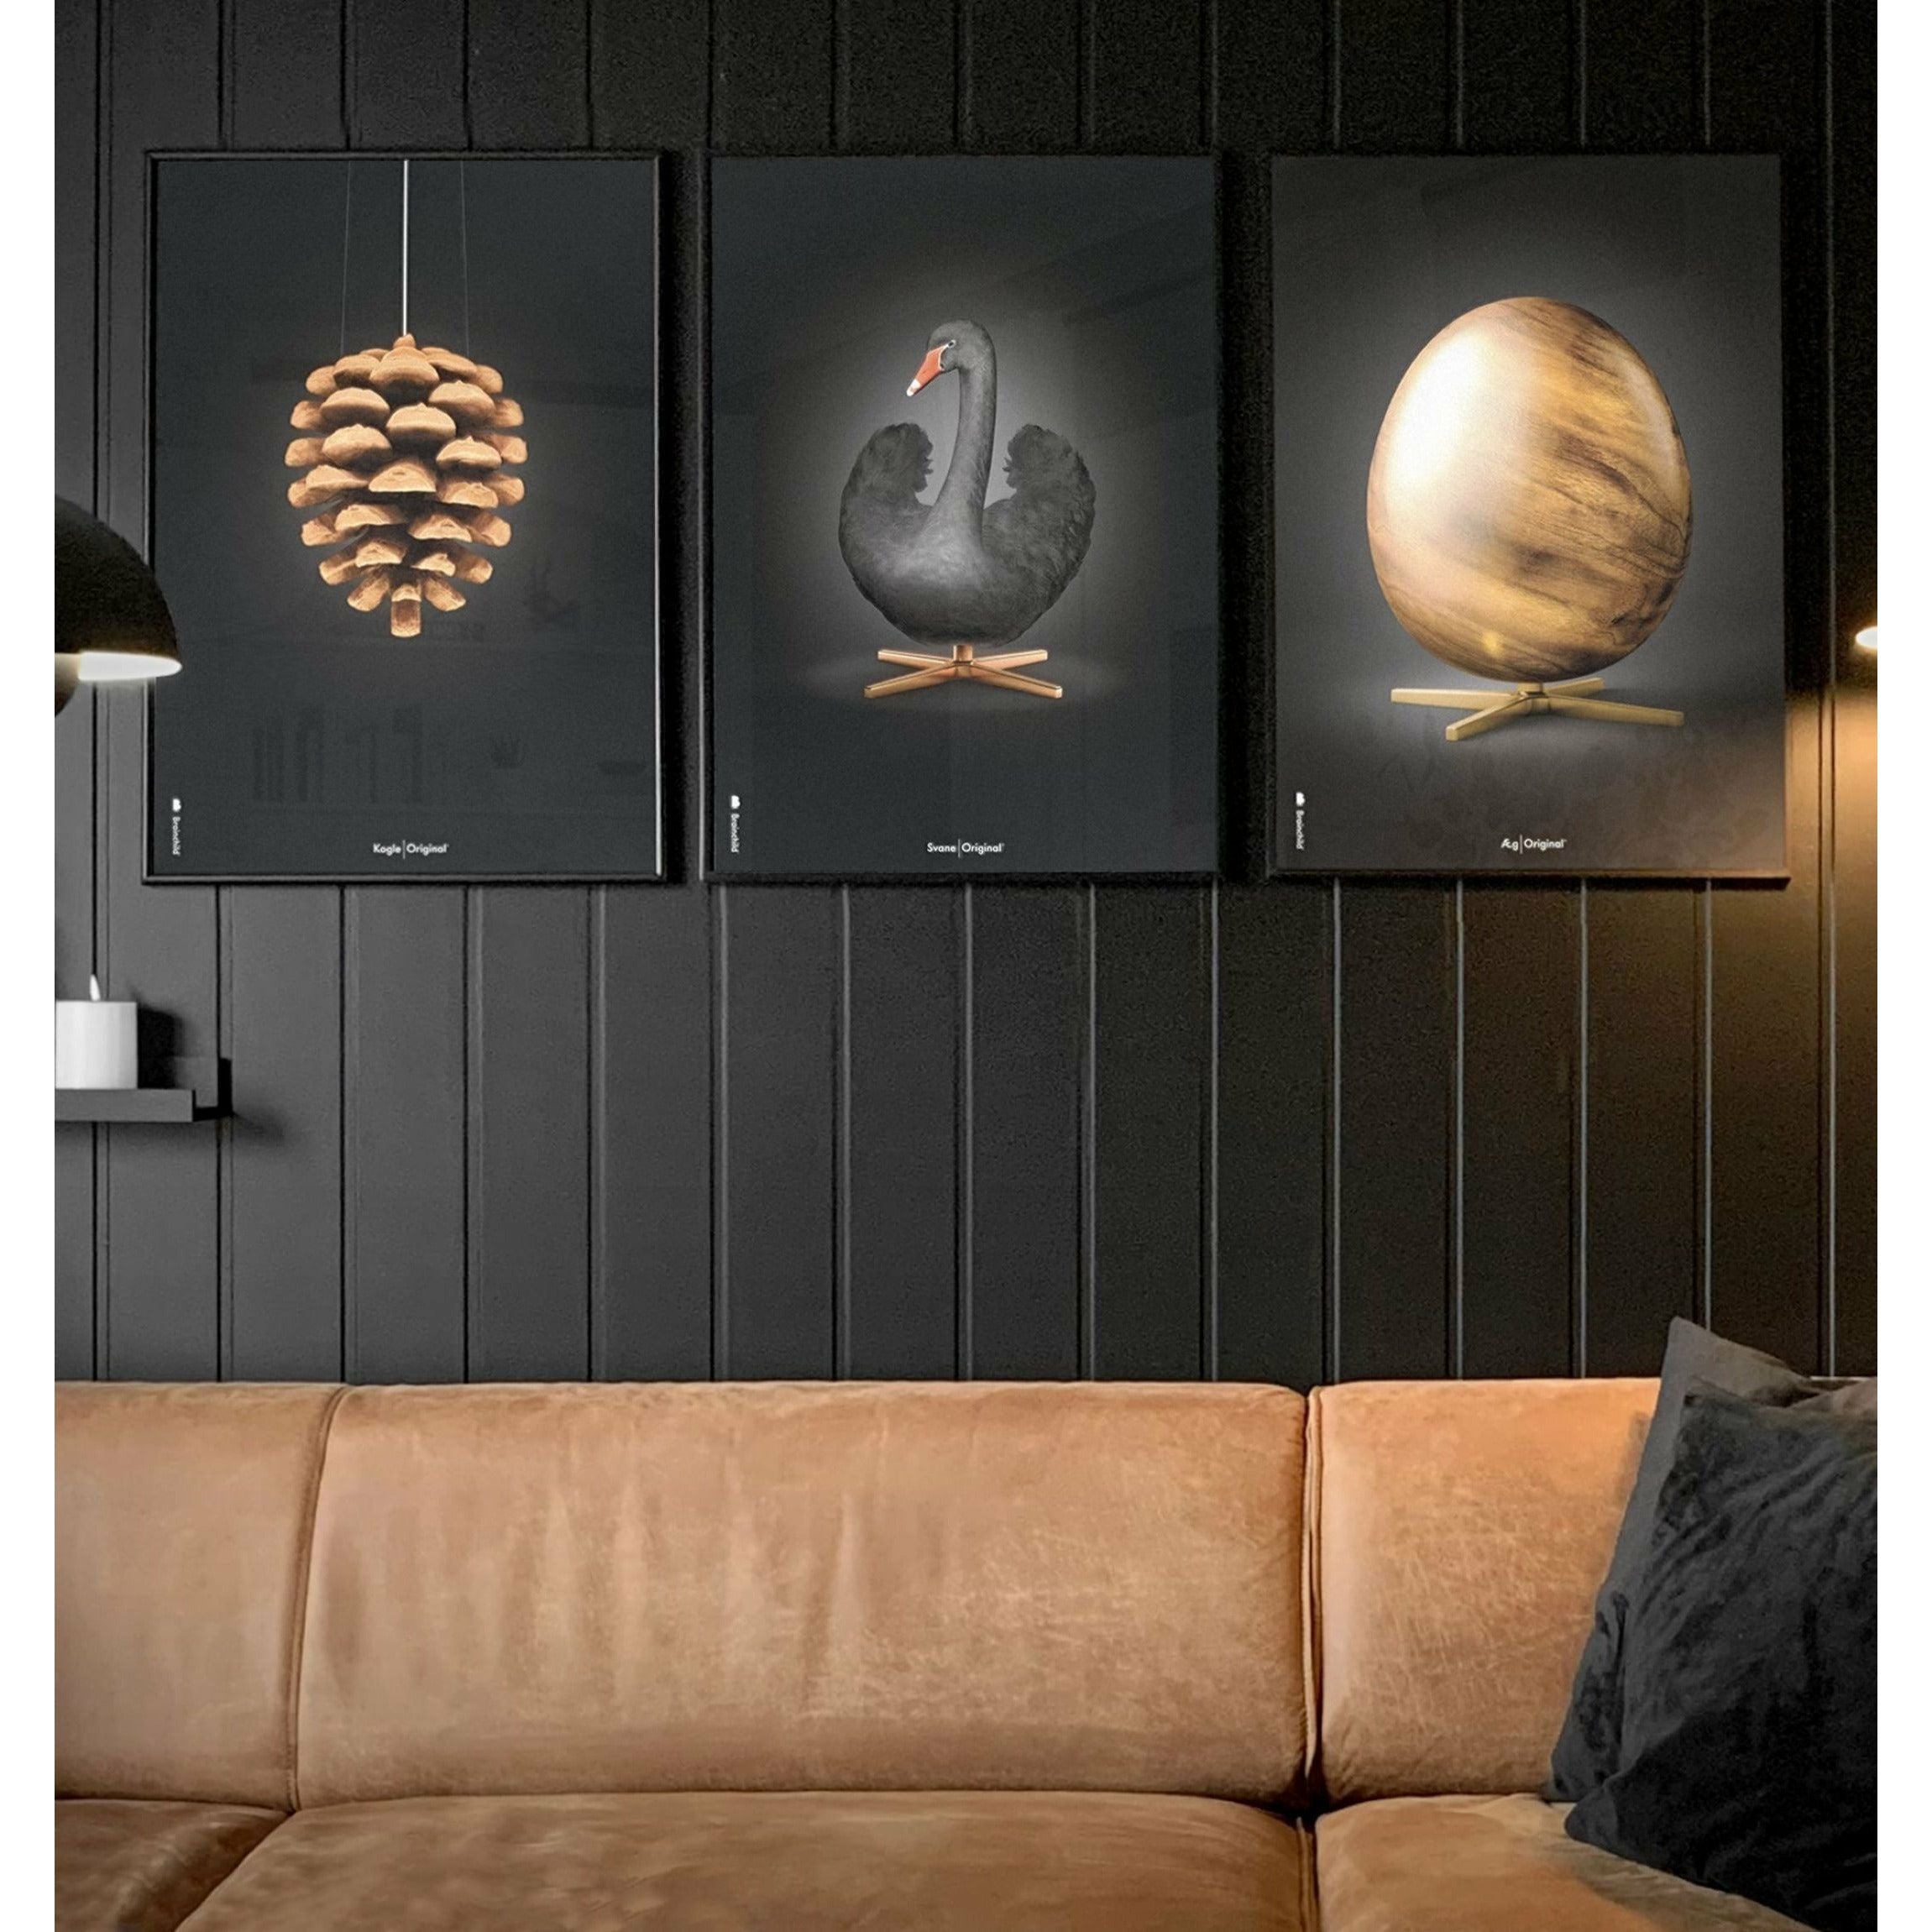 Klasický plakát s labuťovým plakátem, rám vyrobený z lehkého dřeva 70x100 cm, černé/černé pozadí